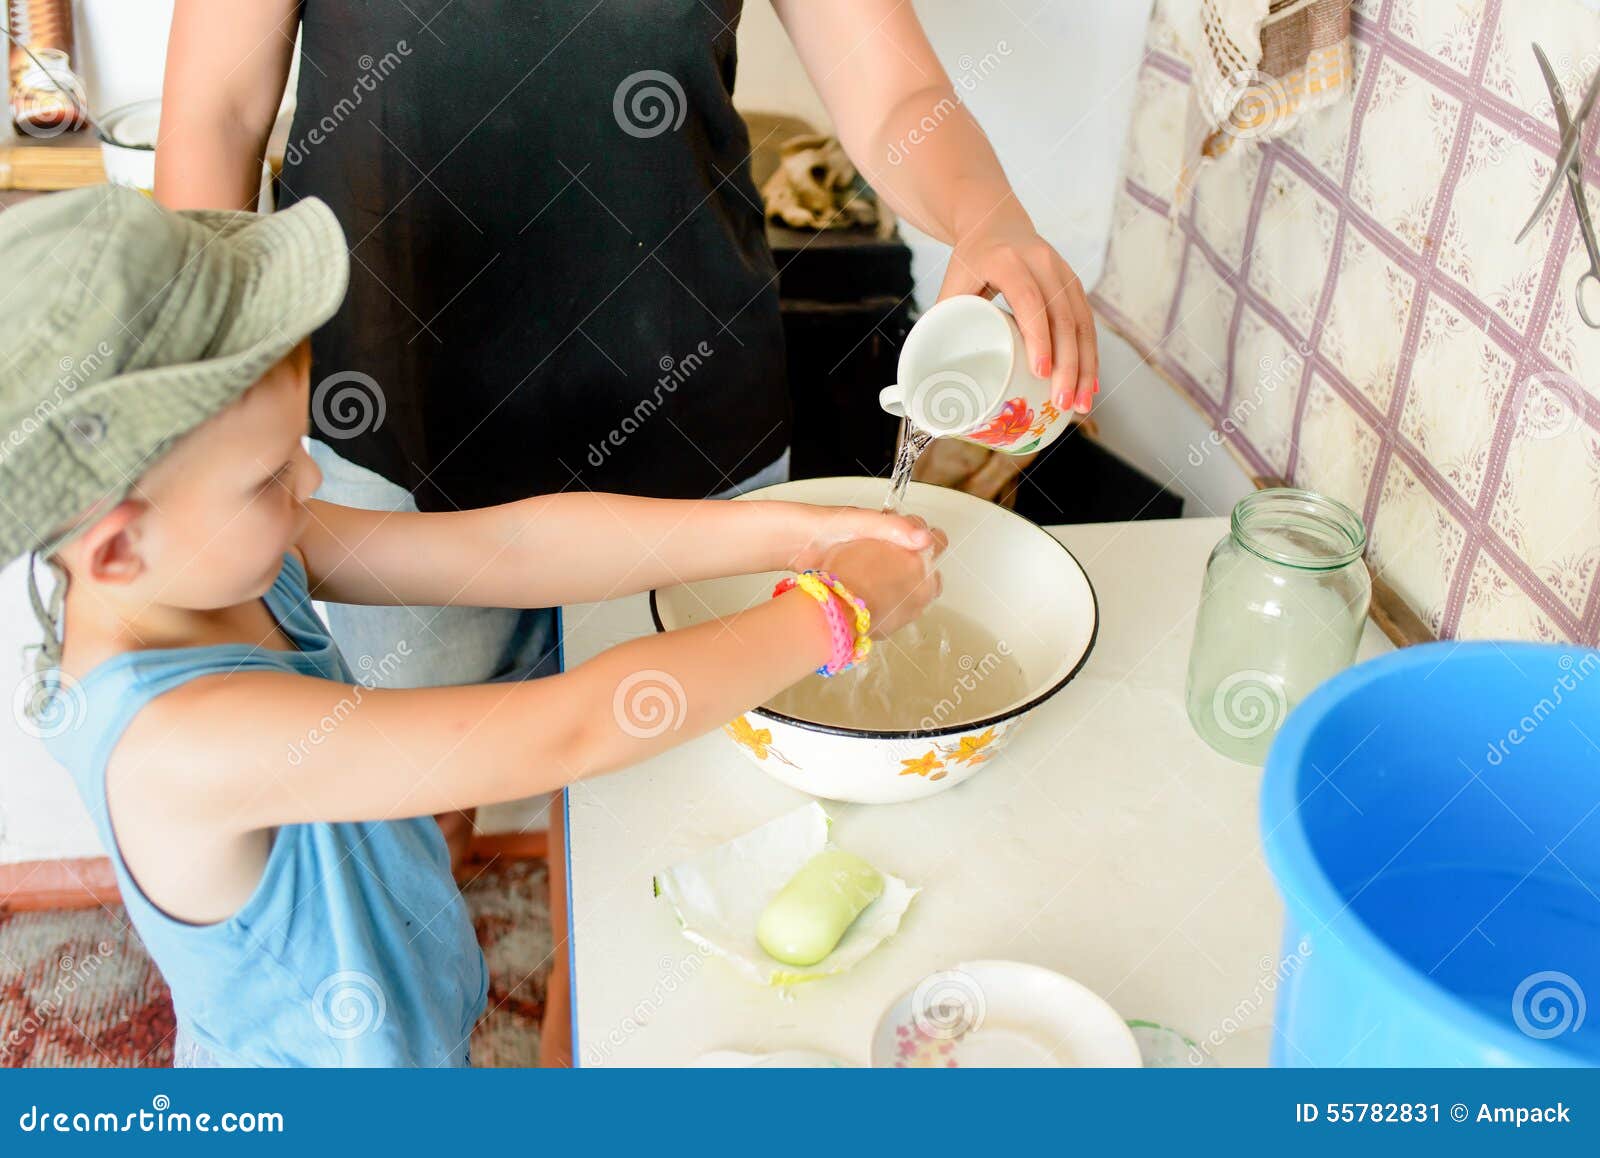 Мама моет бабушку. Мытье рук в тазике. Маленького мальчика моют. Мальчика моют в тазу. Мытье посуды на даче в тазике.